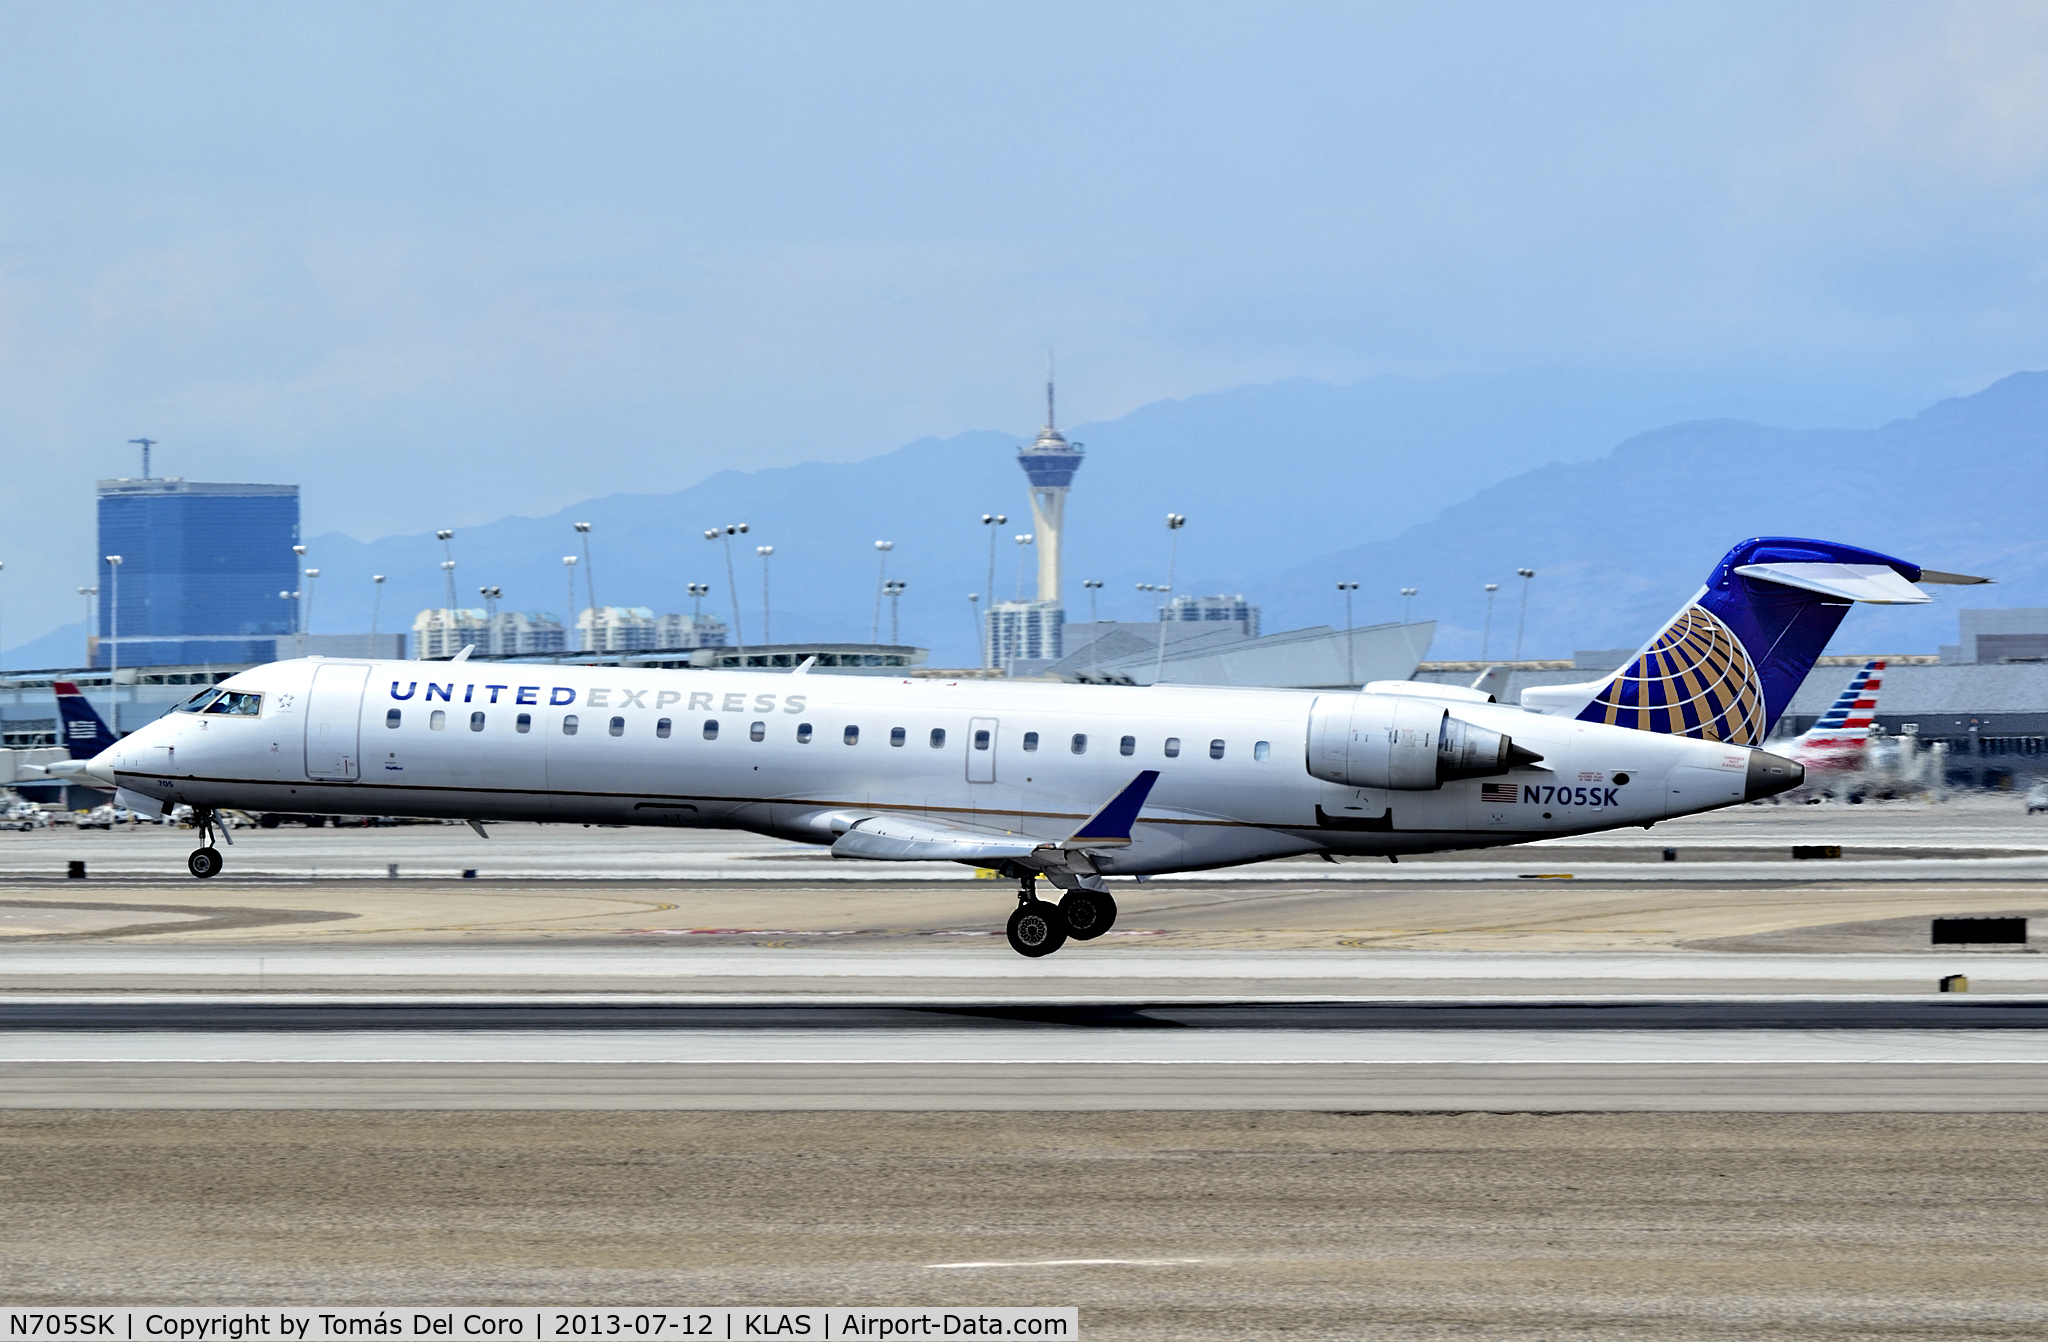 N705SK, 2004 Bombardier CRJ-701 (CL-600-2C10) Regional Jet C/N 10145, N705SK United Express (SkyWest Airlines) Canadair CL-600-2C10 Regional Jet CRJ-700 (cn 10145)

McCarran International Airport (KLAS)
Las Vegas, Nevada
TDelCoro
July 12, 2013